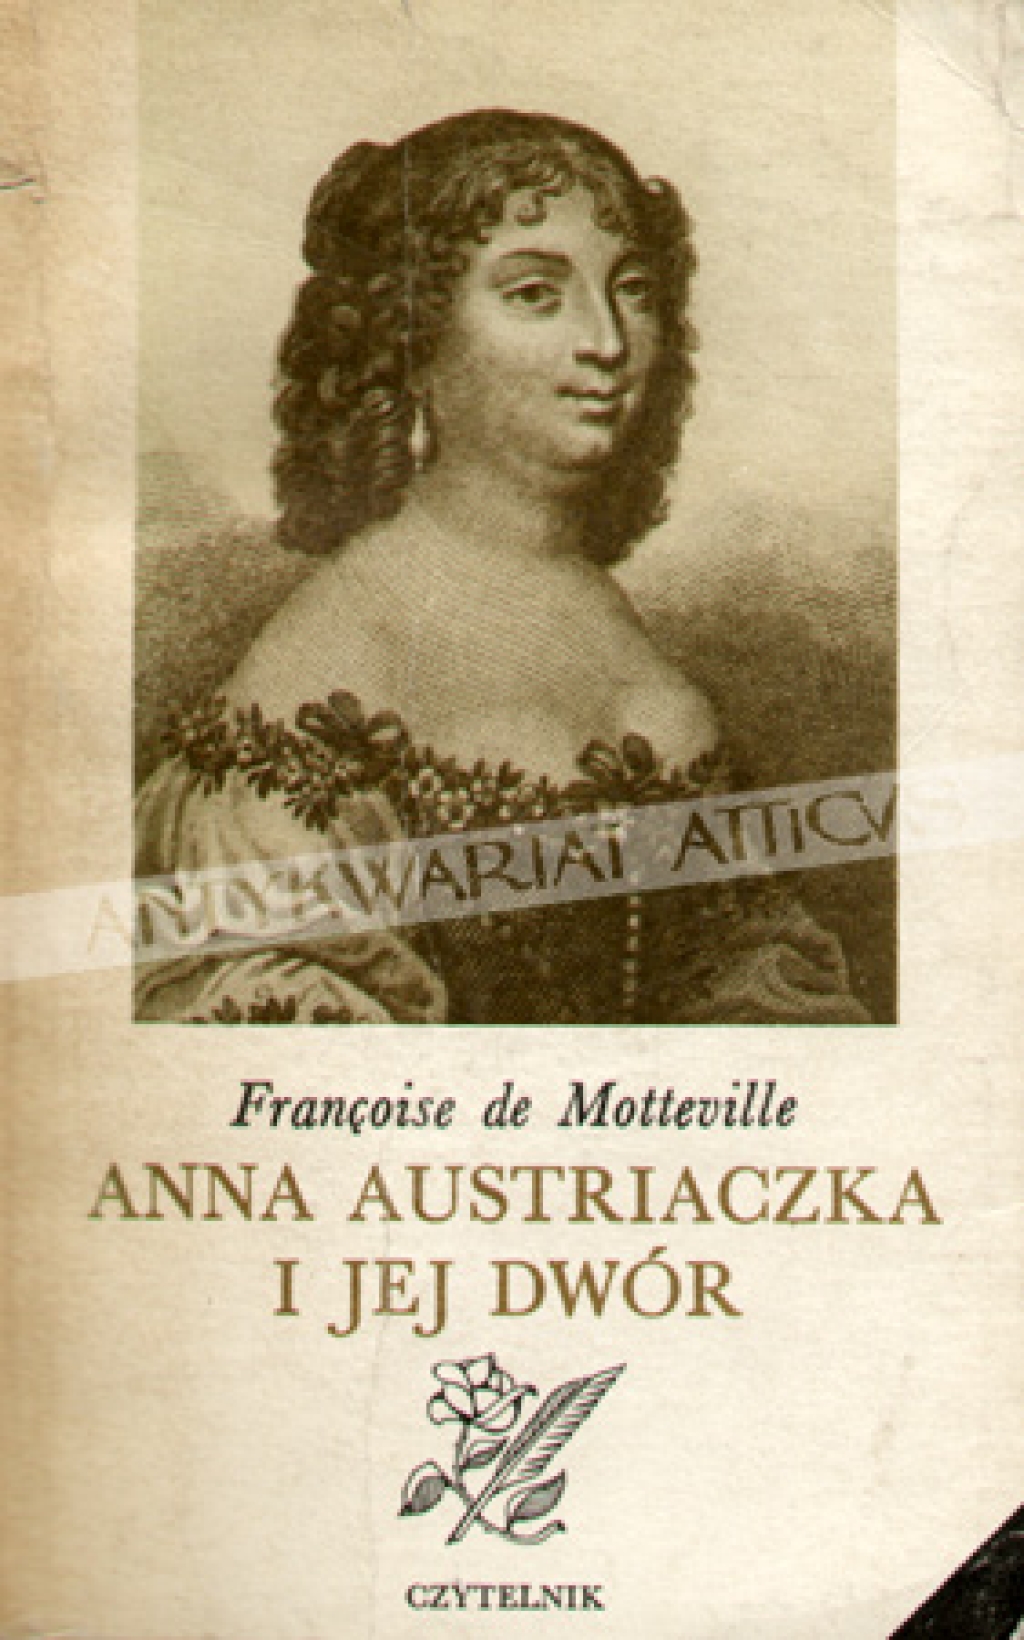 Anna Austriaczka i jej dwór